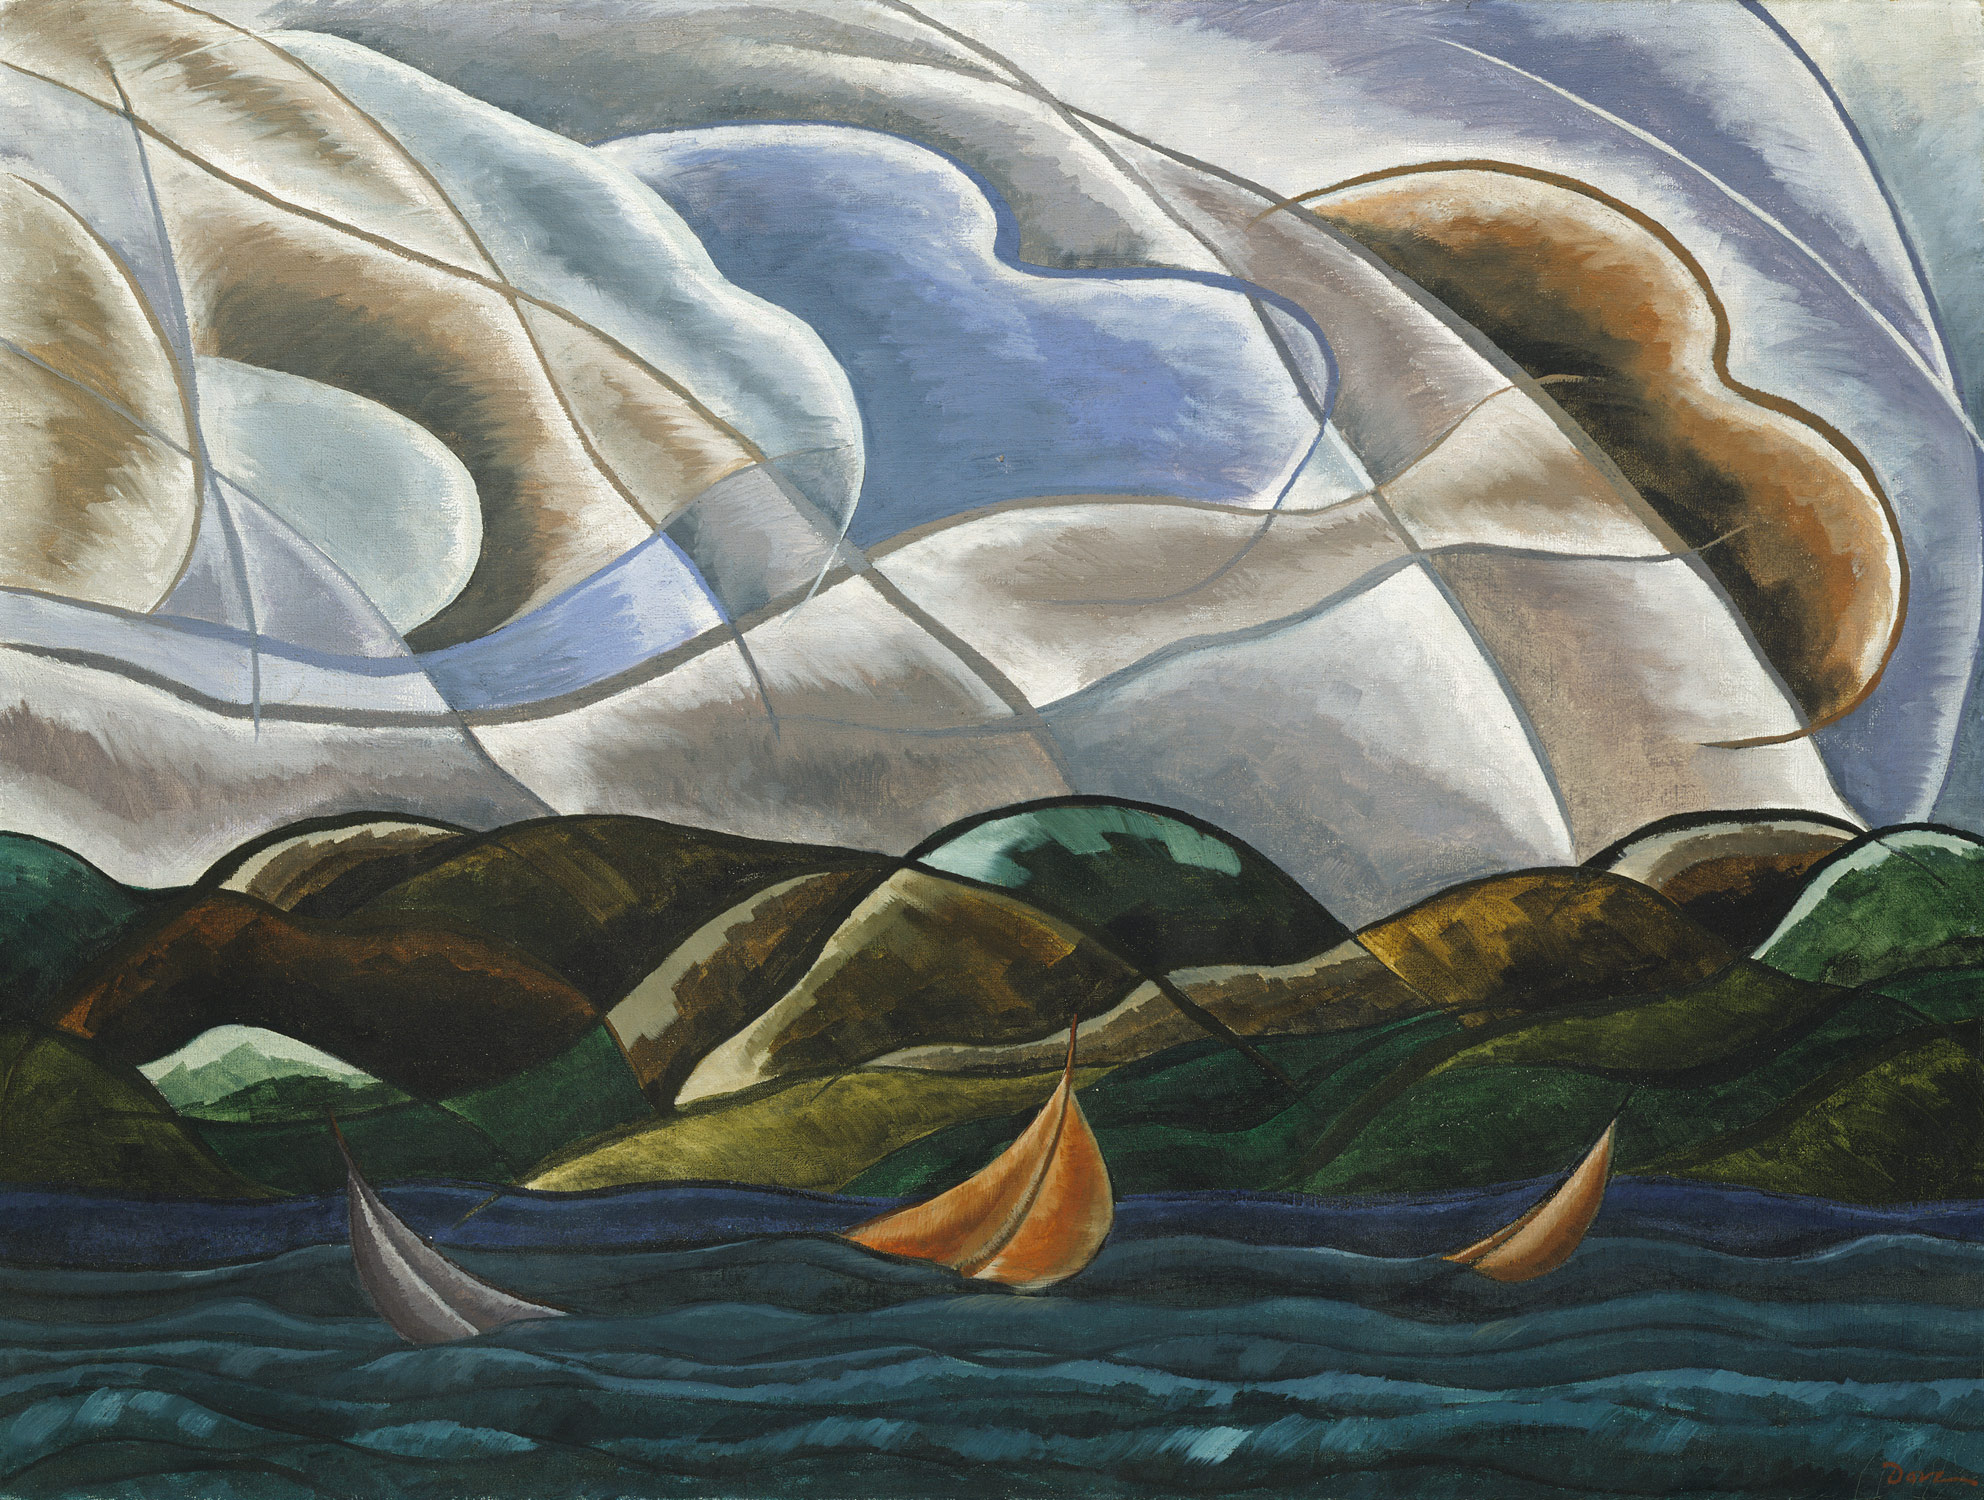 Wolken und Wasser by Arthur Dove - 1930 - 75.2 x 100.6 cm Metropolitan Museum of Art